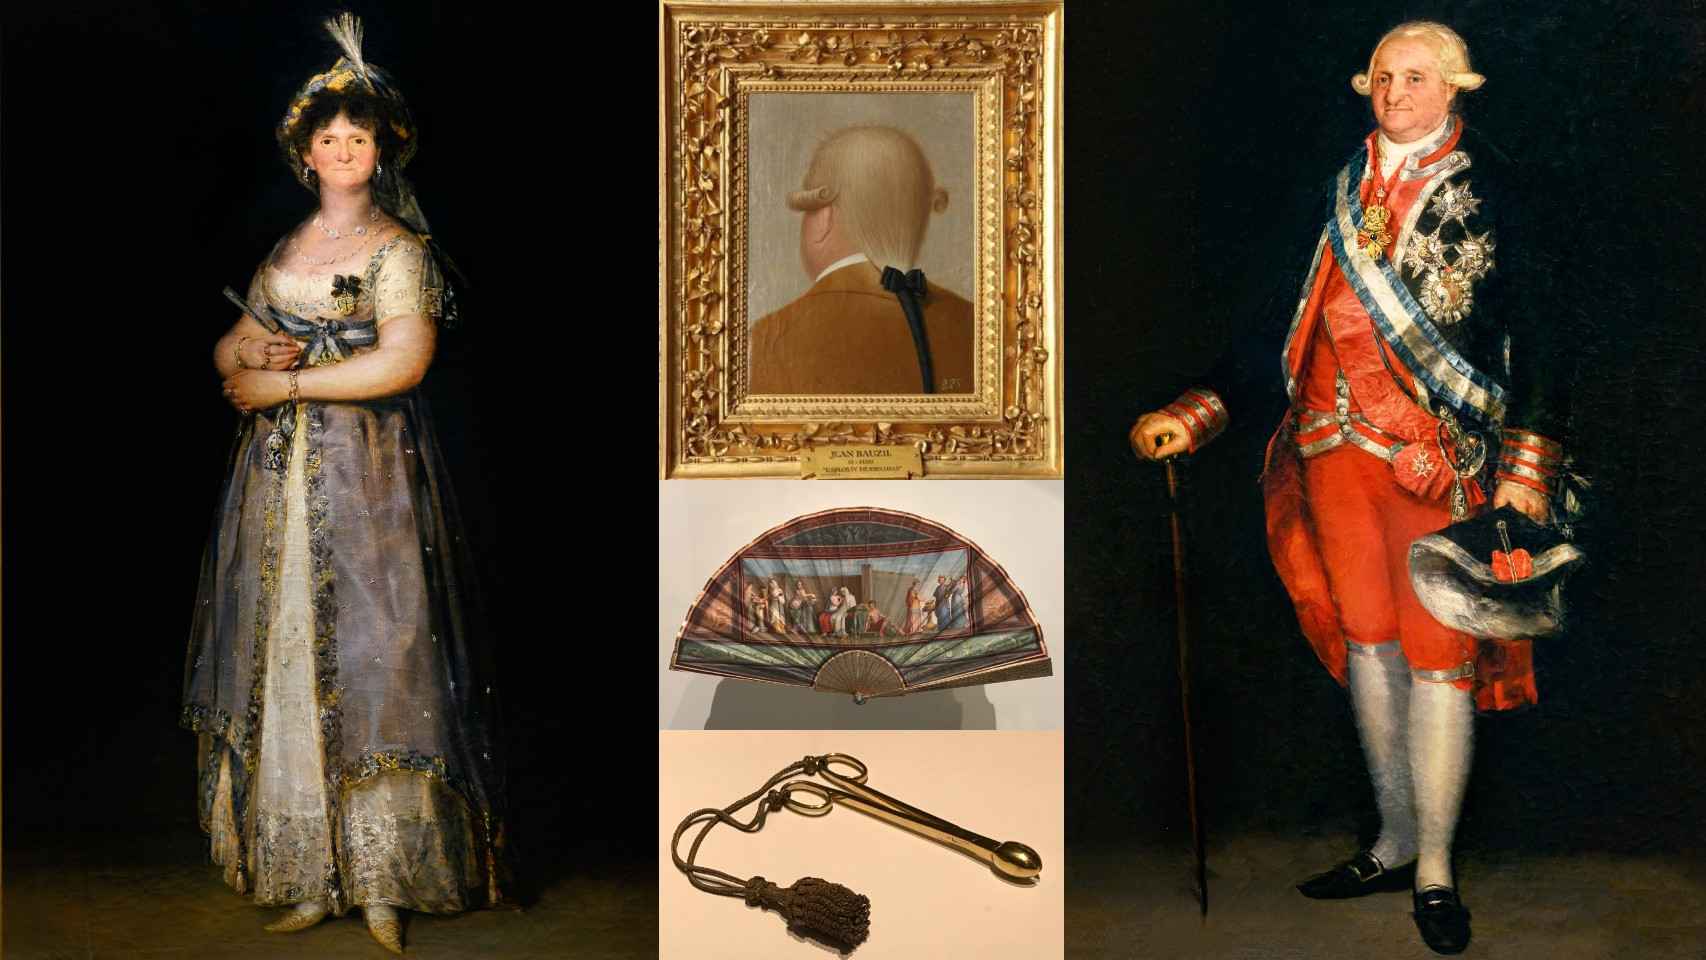 María Luisa de Parma y Carlos IV con algunos objetos de la época - Galería de Colecciones Reales (GCR).